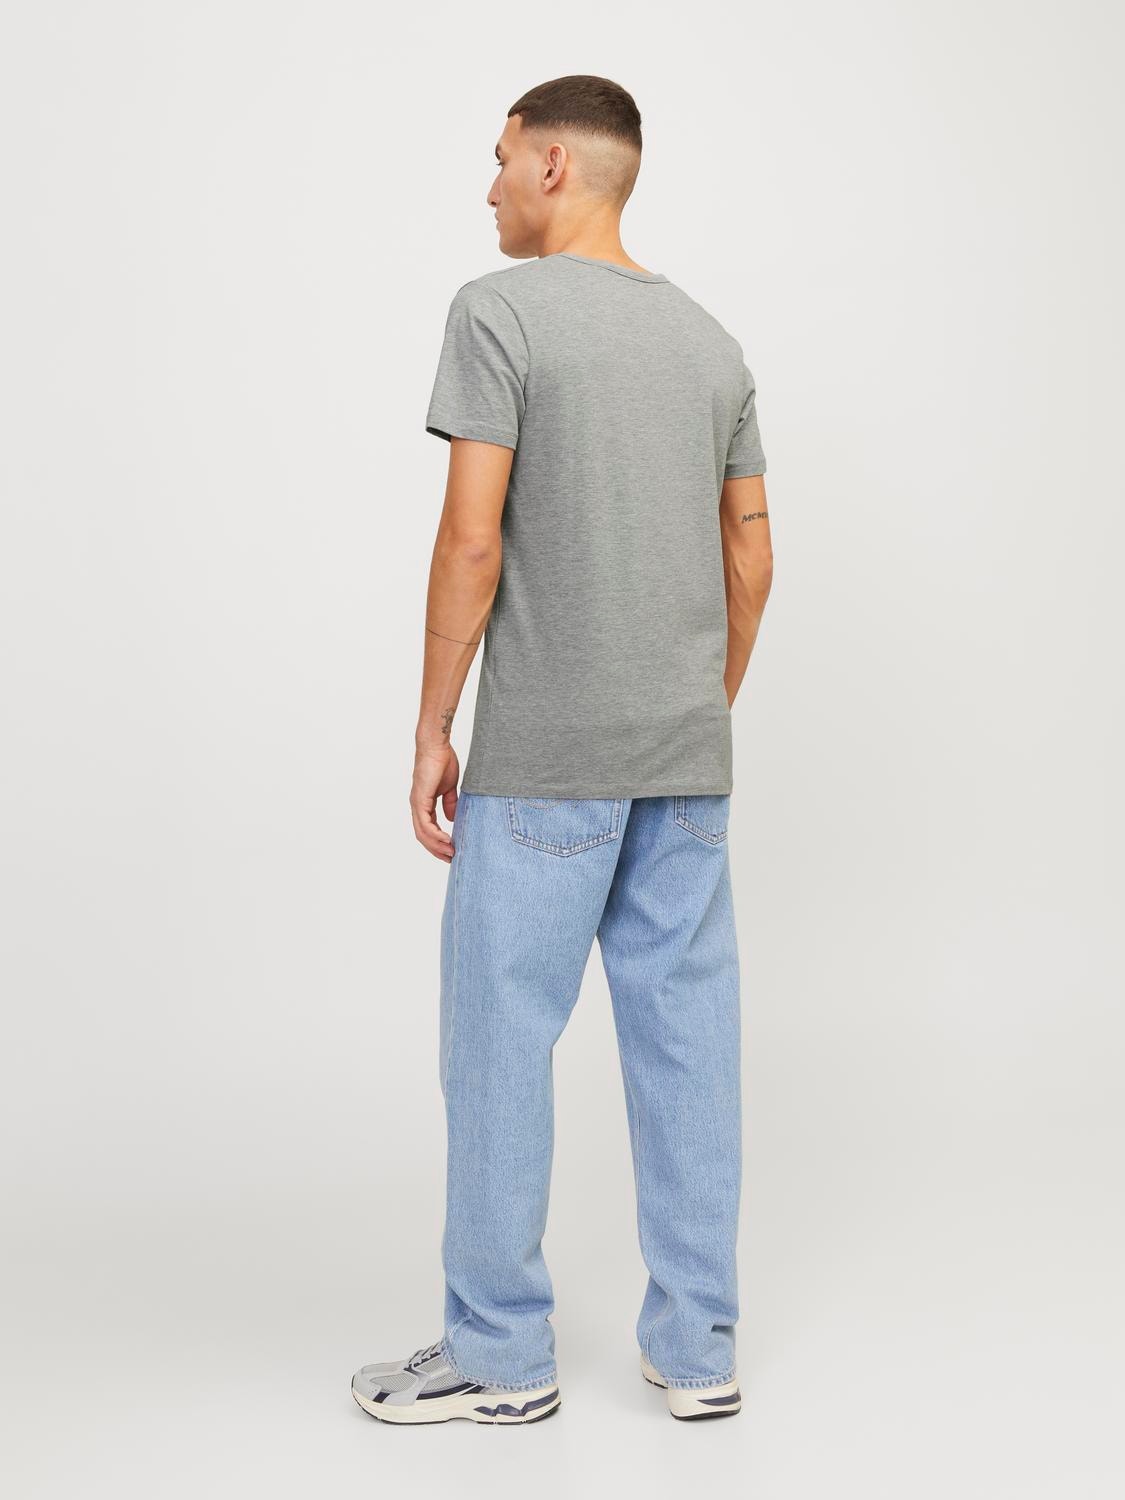 Jack & Jones Basic V-Ausschnitt T-shirt -Light Grey Melange - 12059219